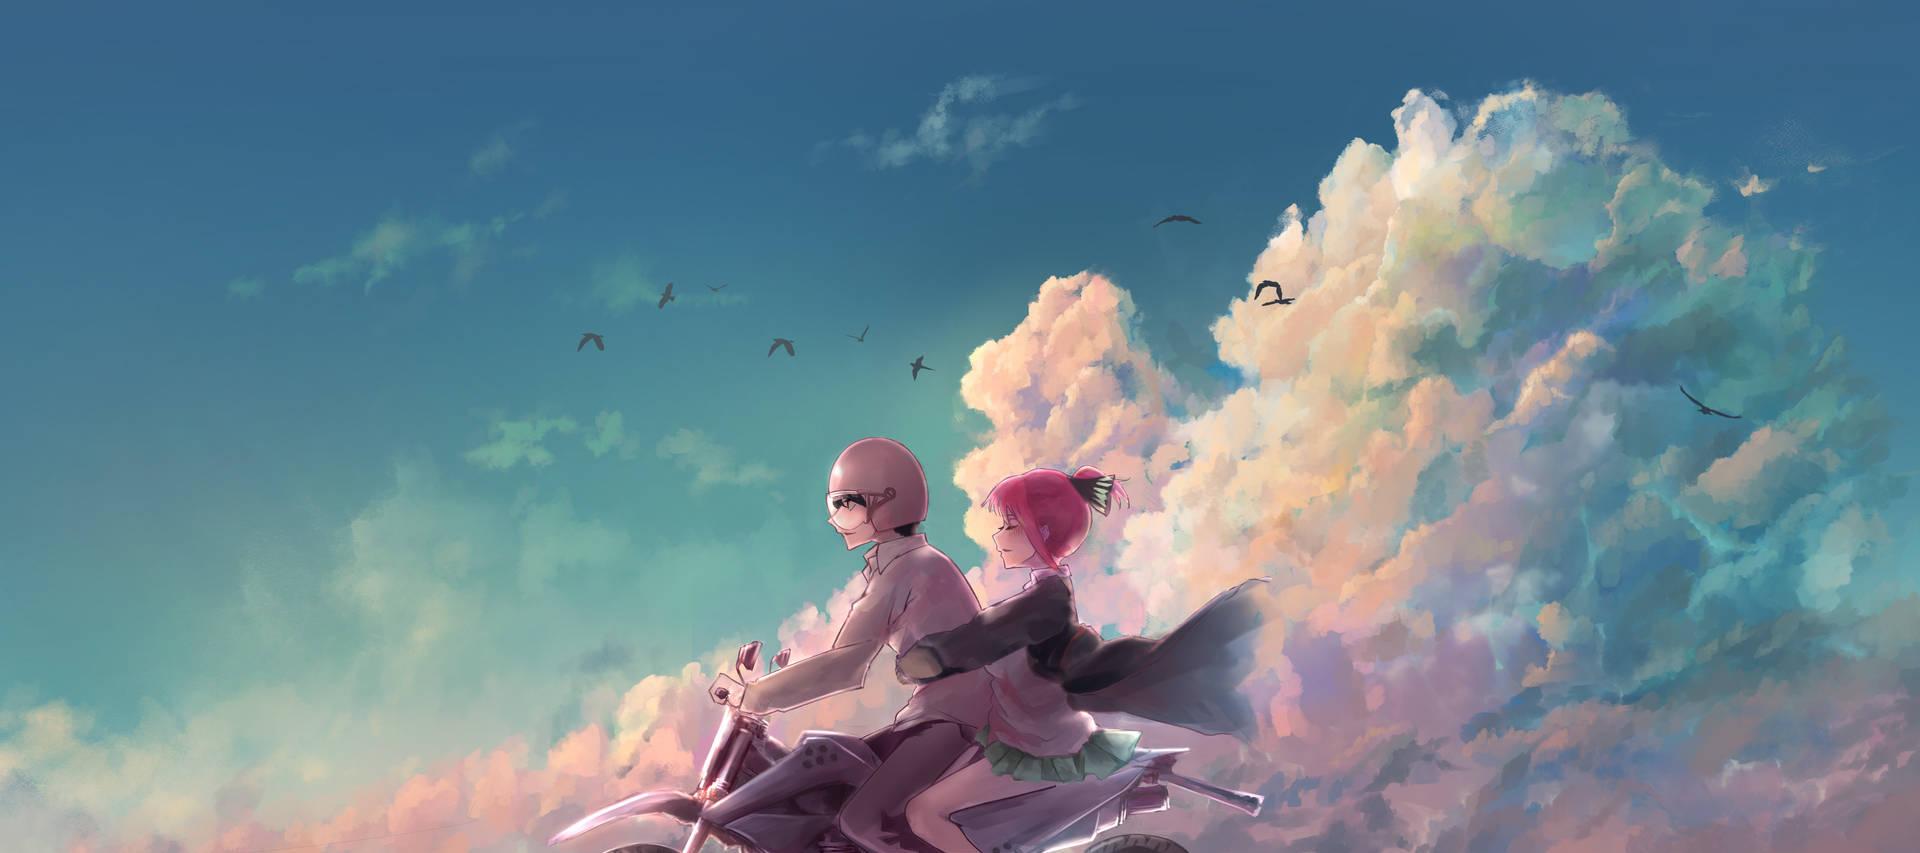 Aesthetic Anime Desktop Background Wallpaper